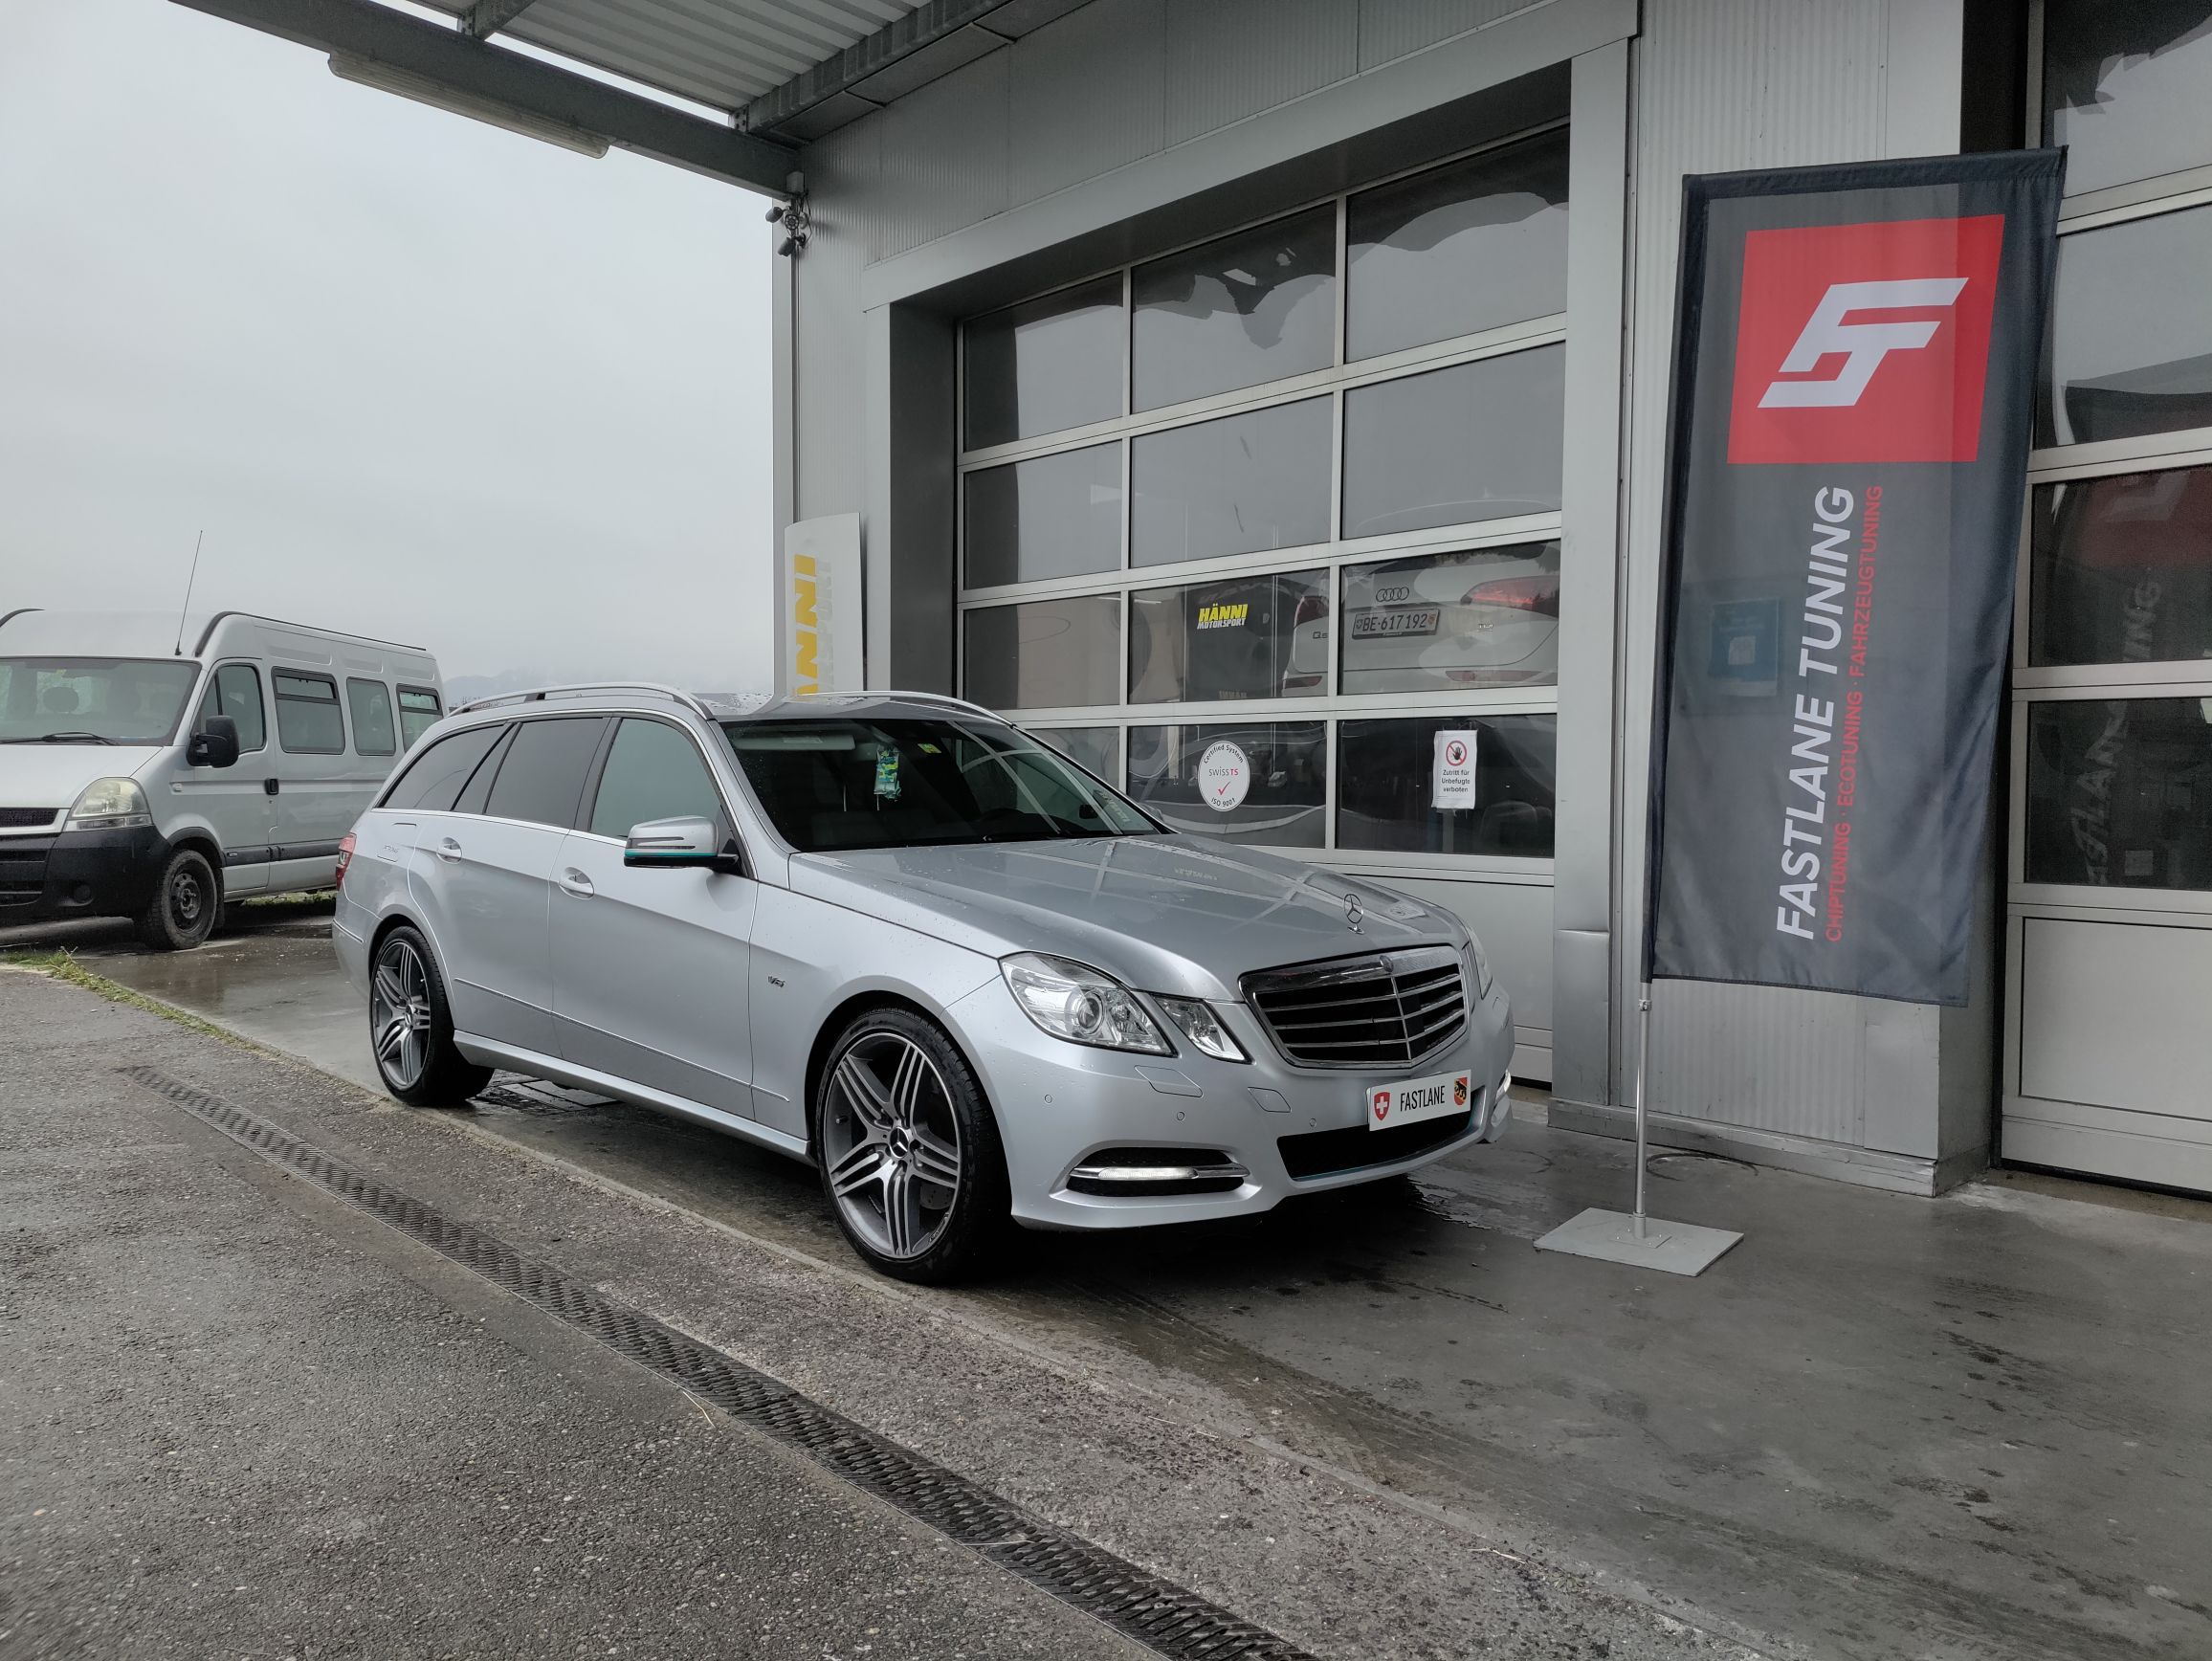 Ein Mercedes Benz E350 CDI V6 Diesel Kombi in der Farbe Silber steht vor der Garage neben der Fastlane Tuning Schweiz Flagge